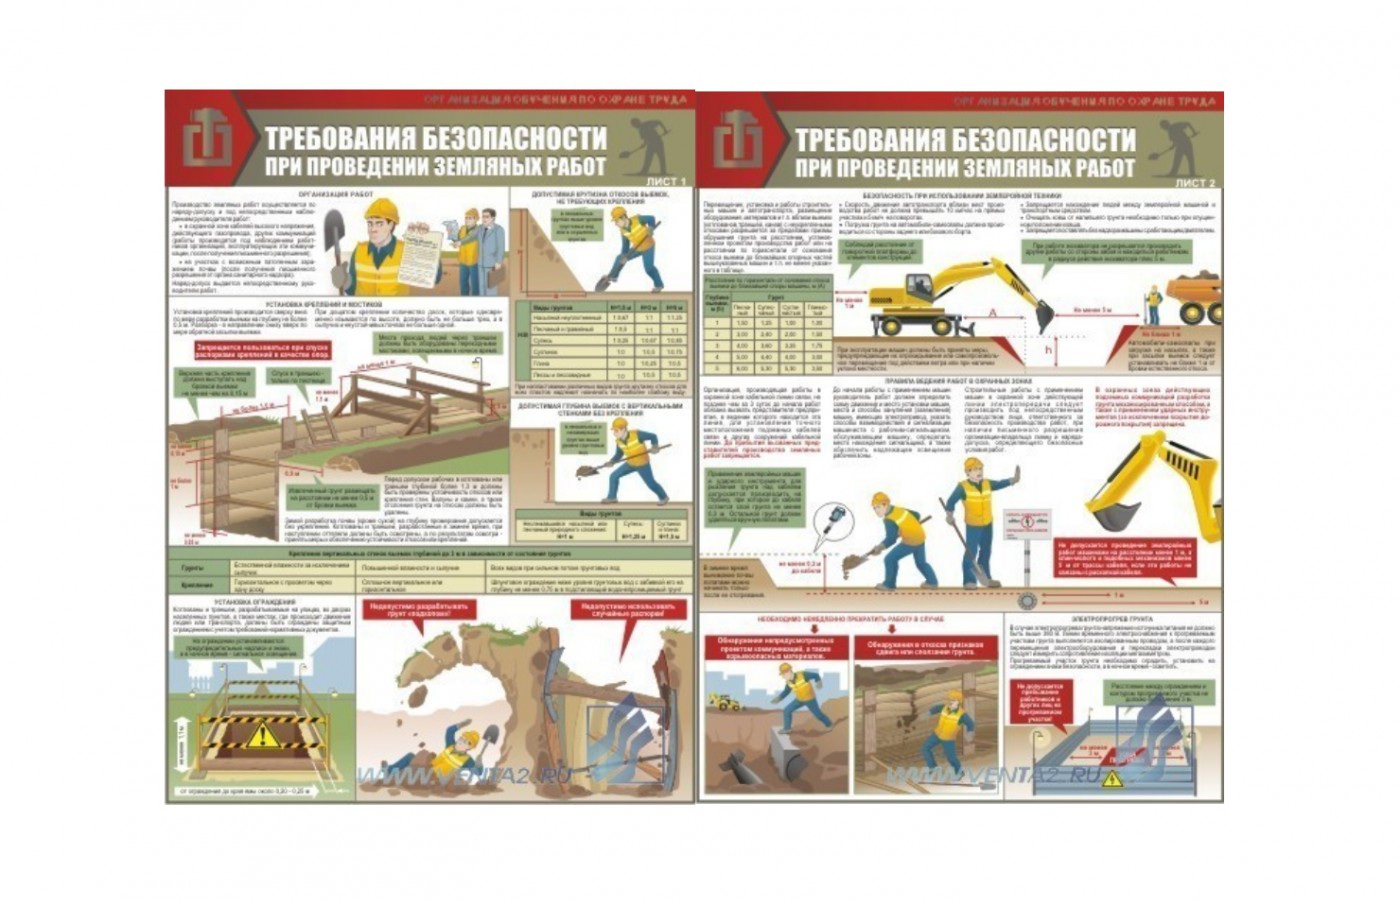 Комплект плакатов "Земляные работы. Требования безопасности"